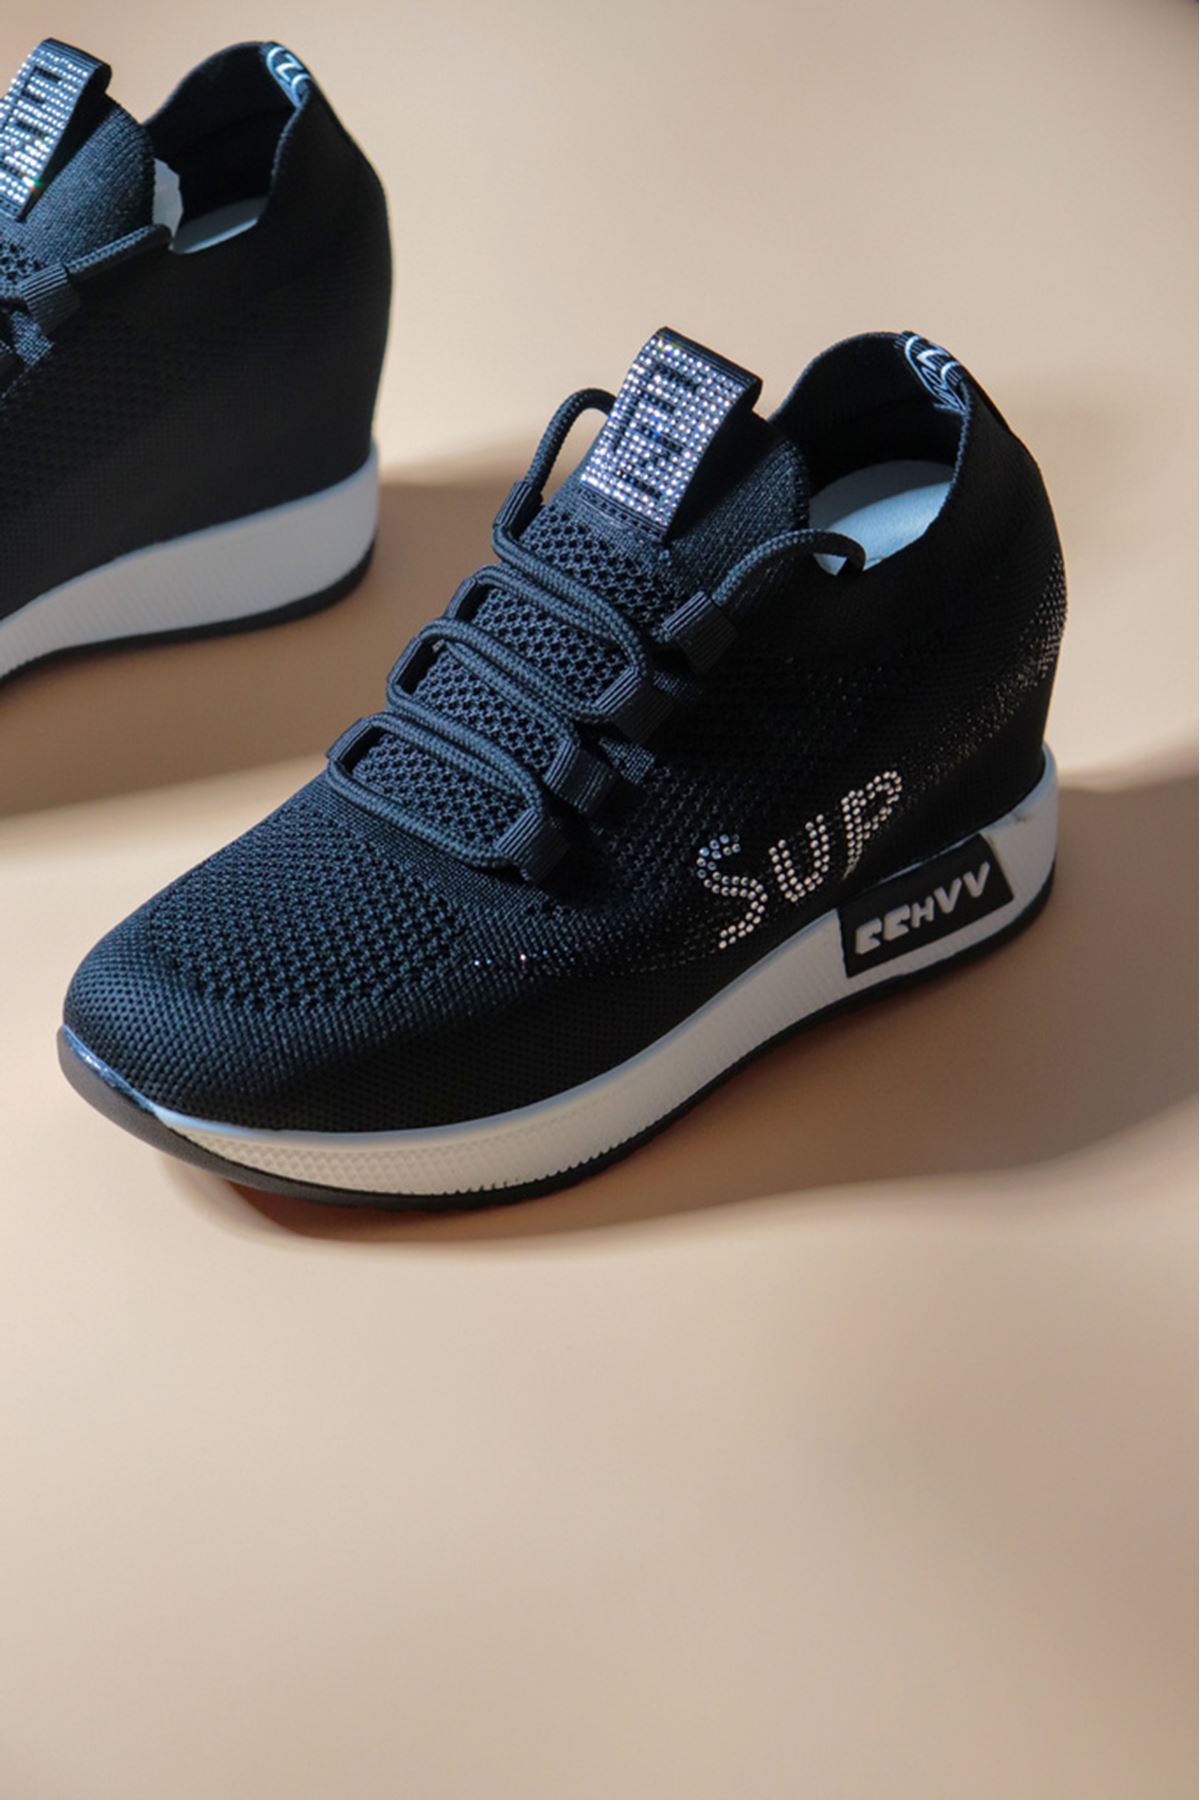 Guja - 22Y305 - Siyah Sneakers Kadın Ayakkabı 